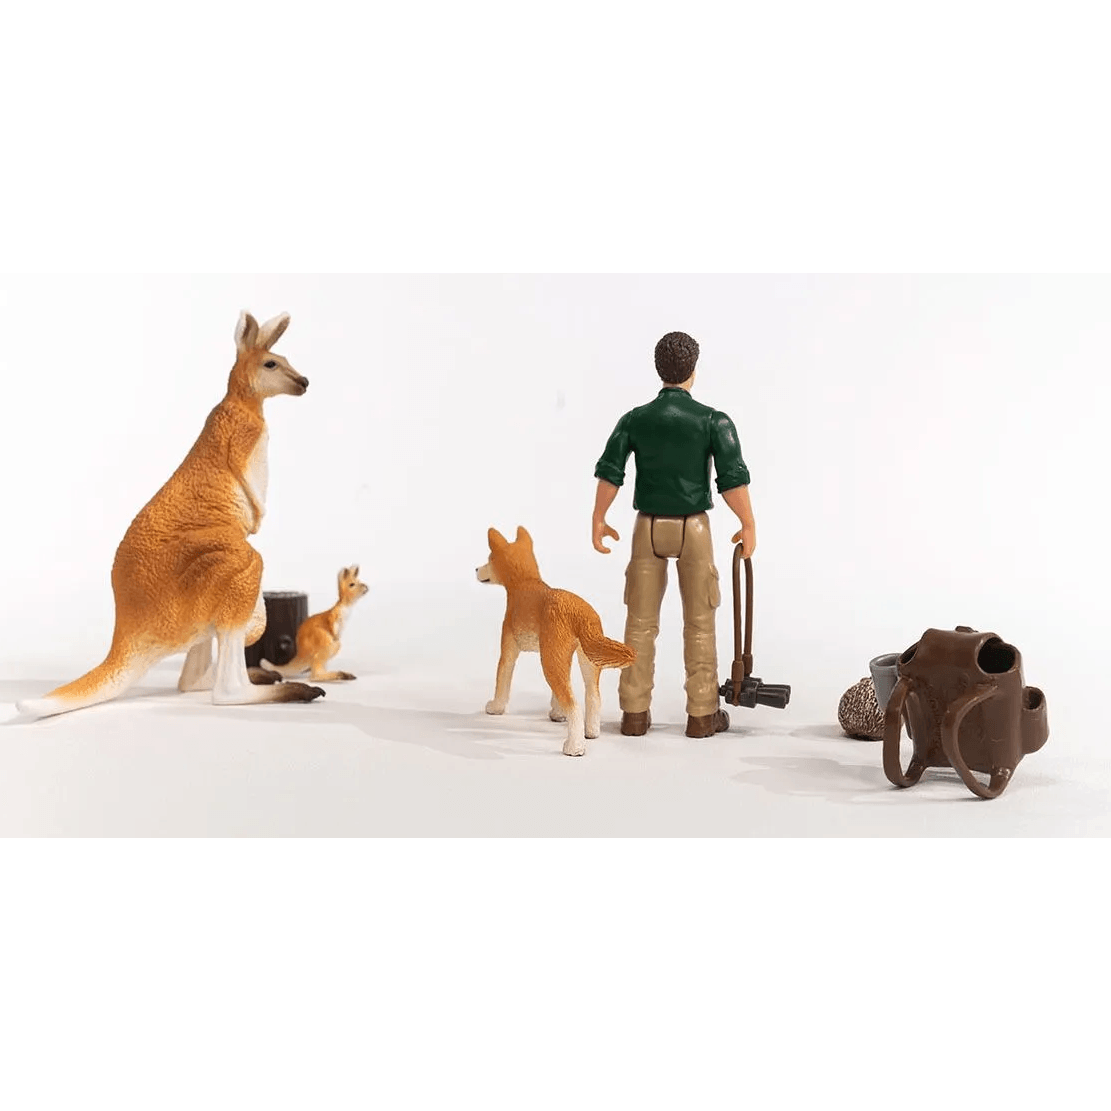 Toys N Tuck:Schleich 42623 Wild Life Outback Adventures,Schleich